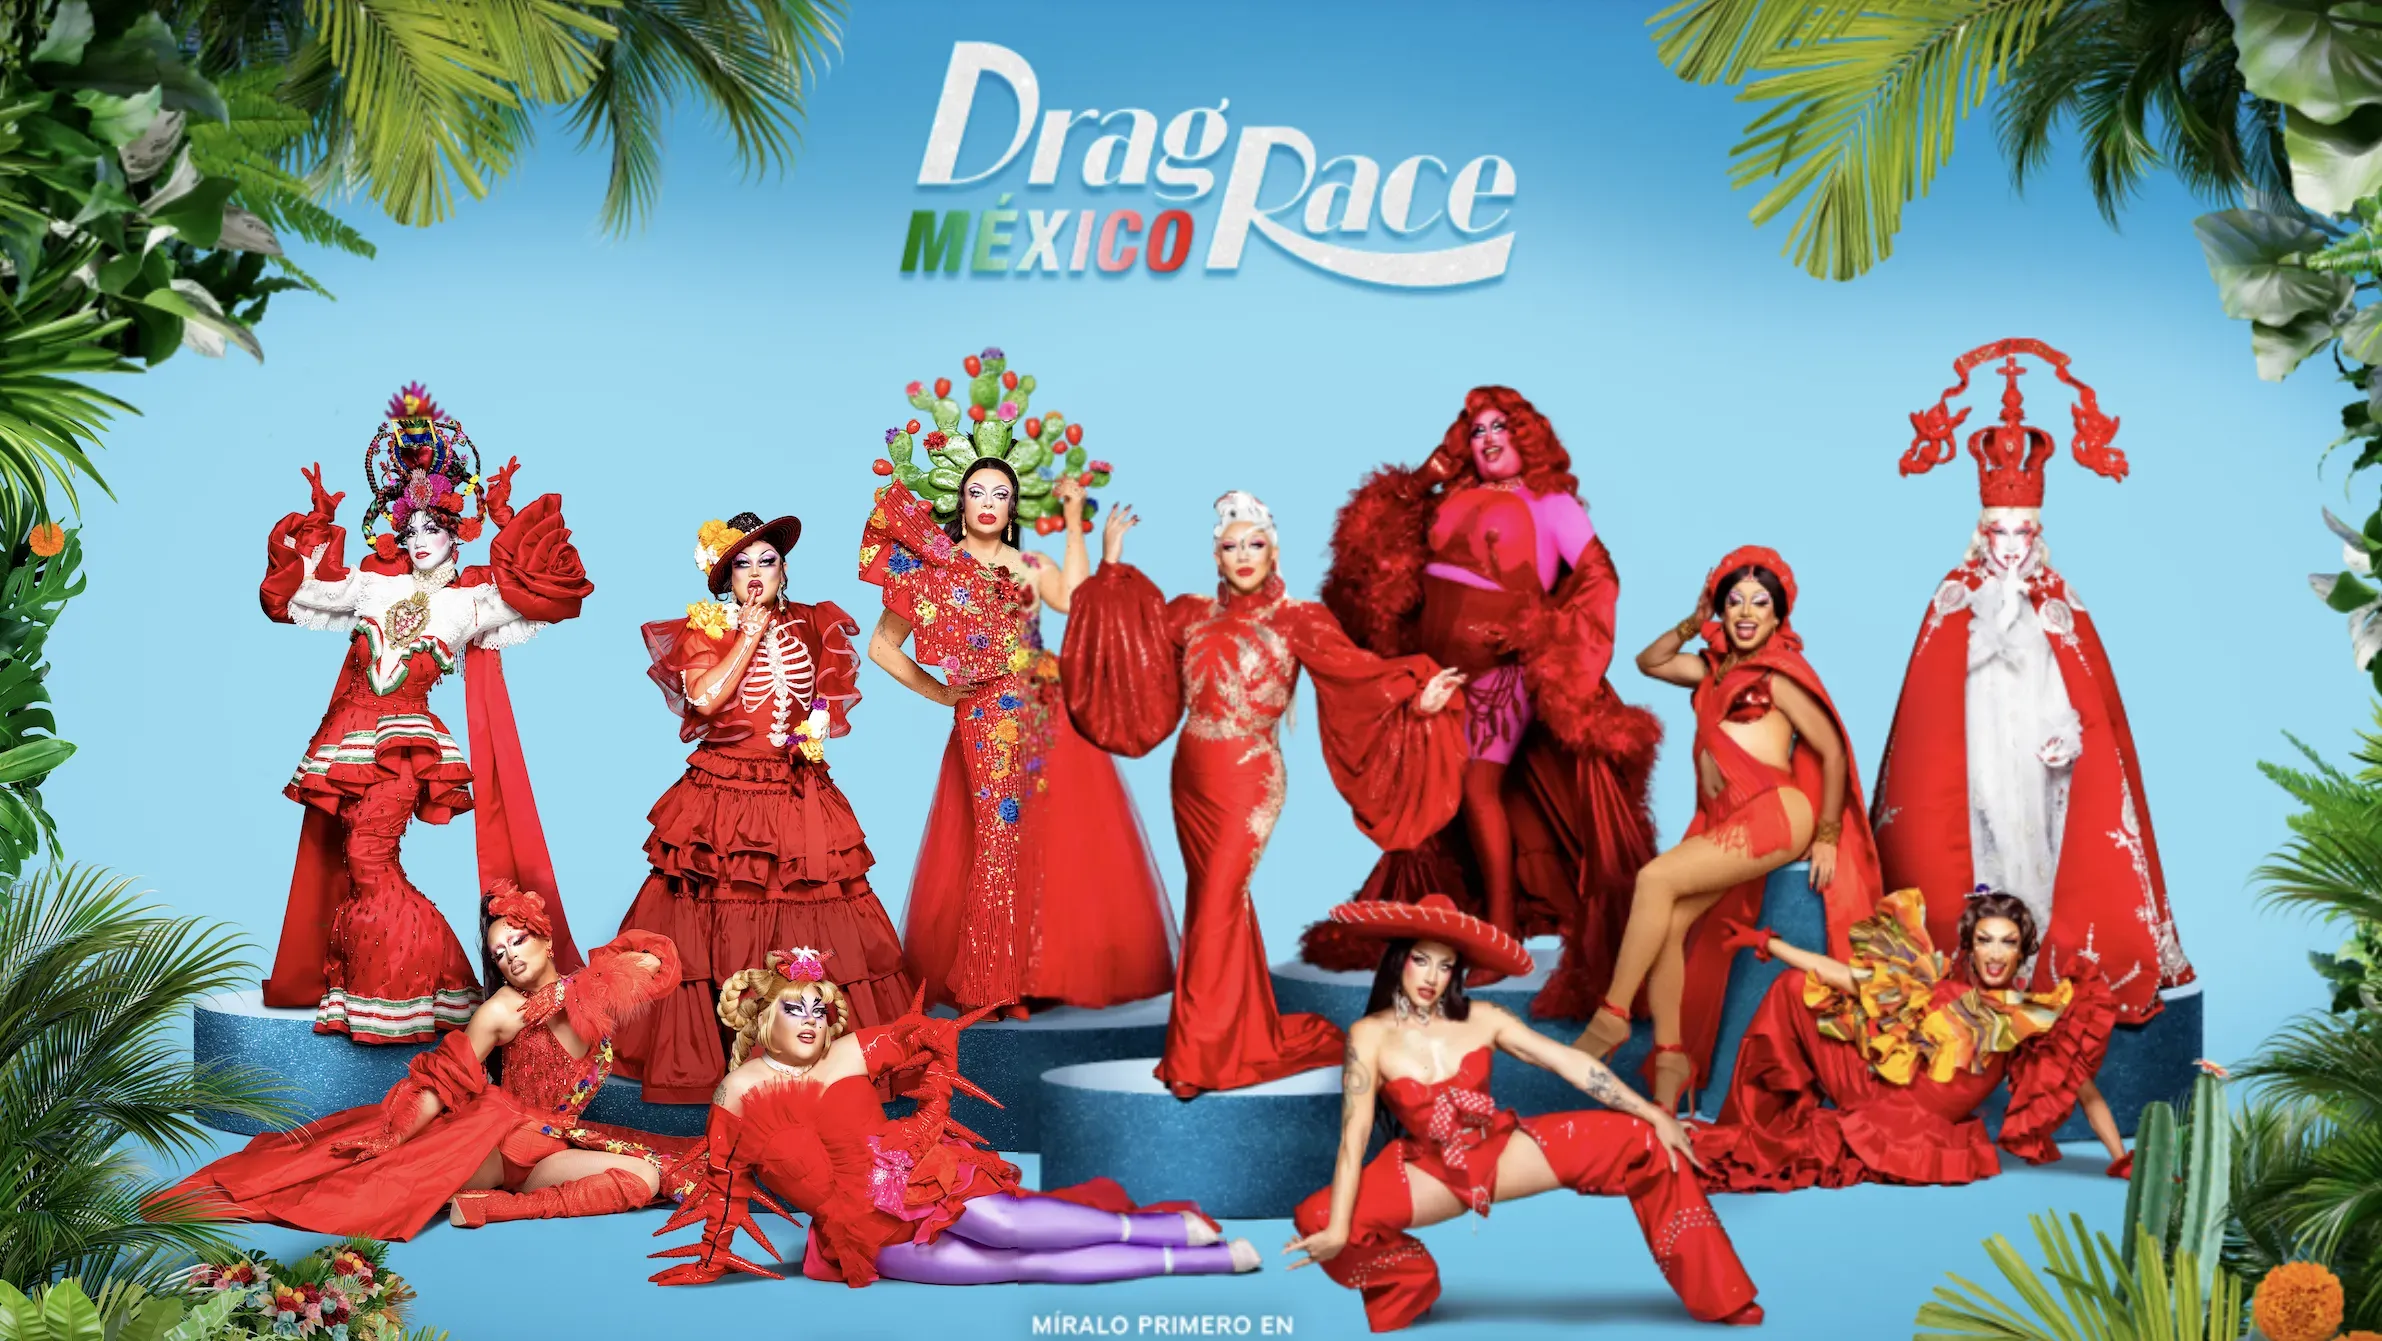 ¡Prepárense! El baile, la moda y el lipsync llegarán con el Drag Race México ¿Cuándo empieza? Aquí te decimos